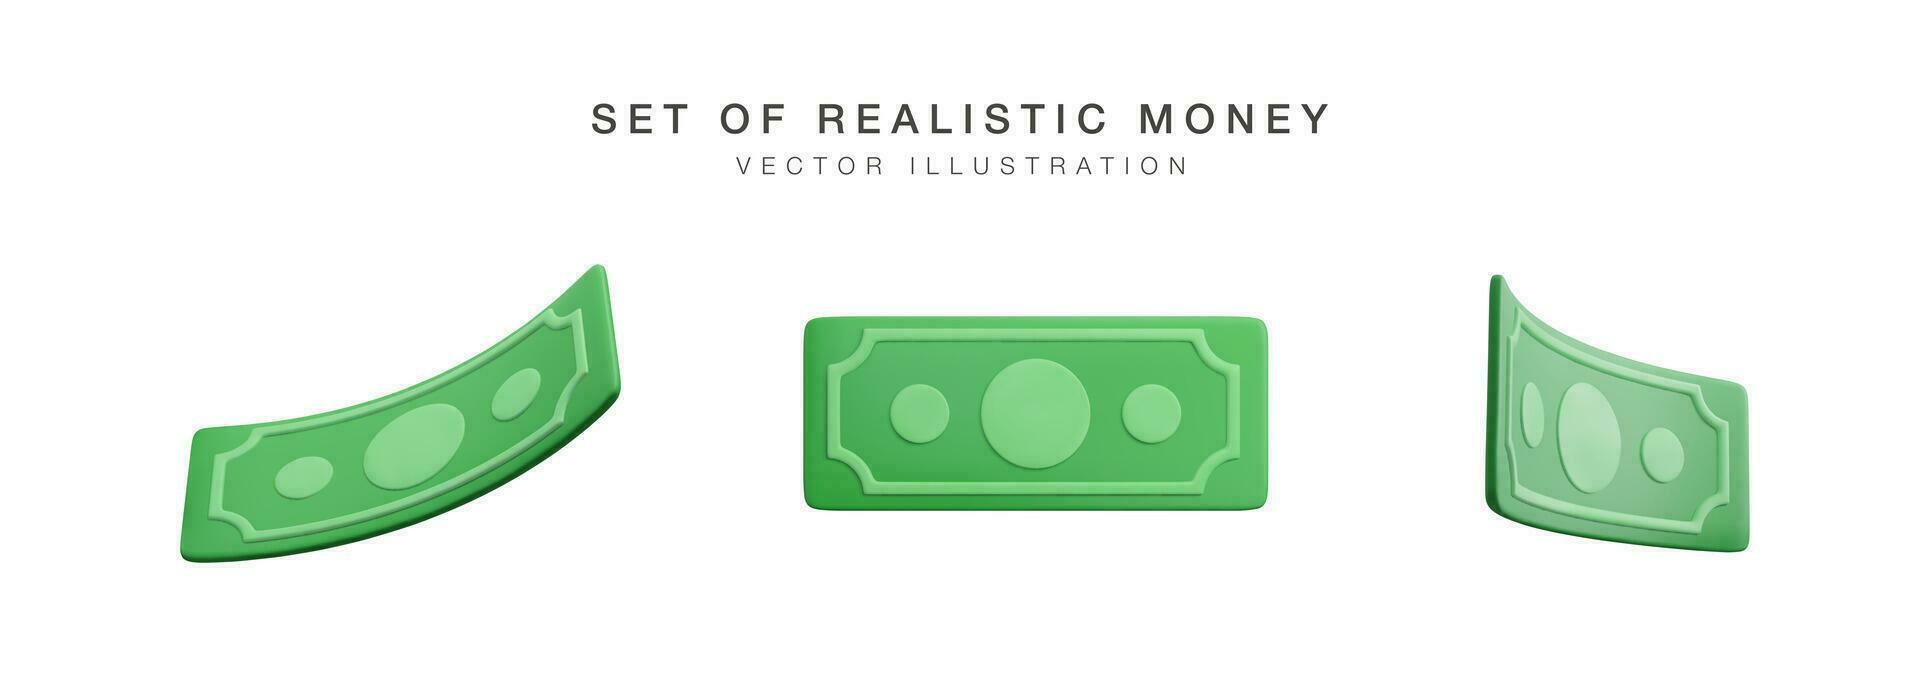 realista billete de banco moneda en dibujos animados estilo. 3d verde papel dólares conjunto de retorcido dinero. vector ilustración